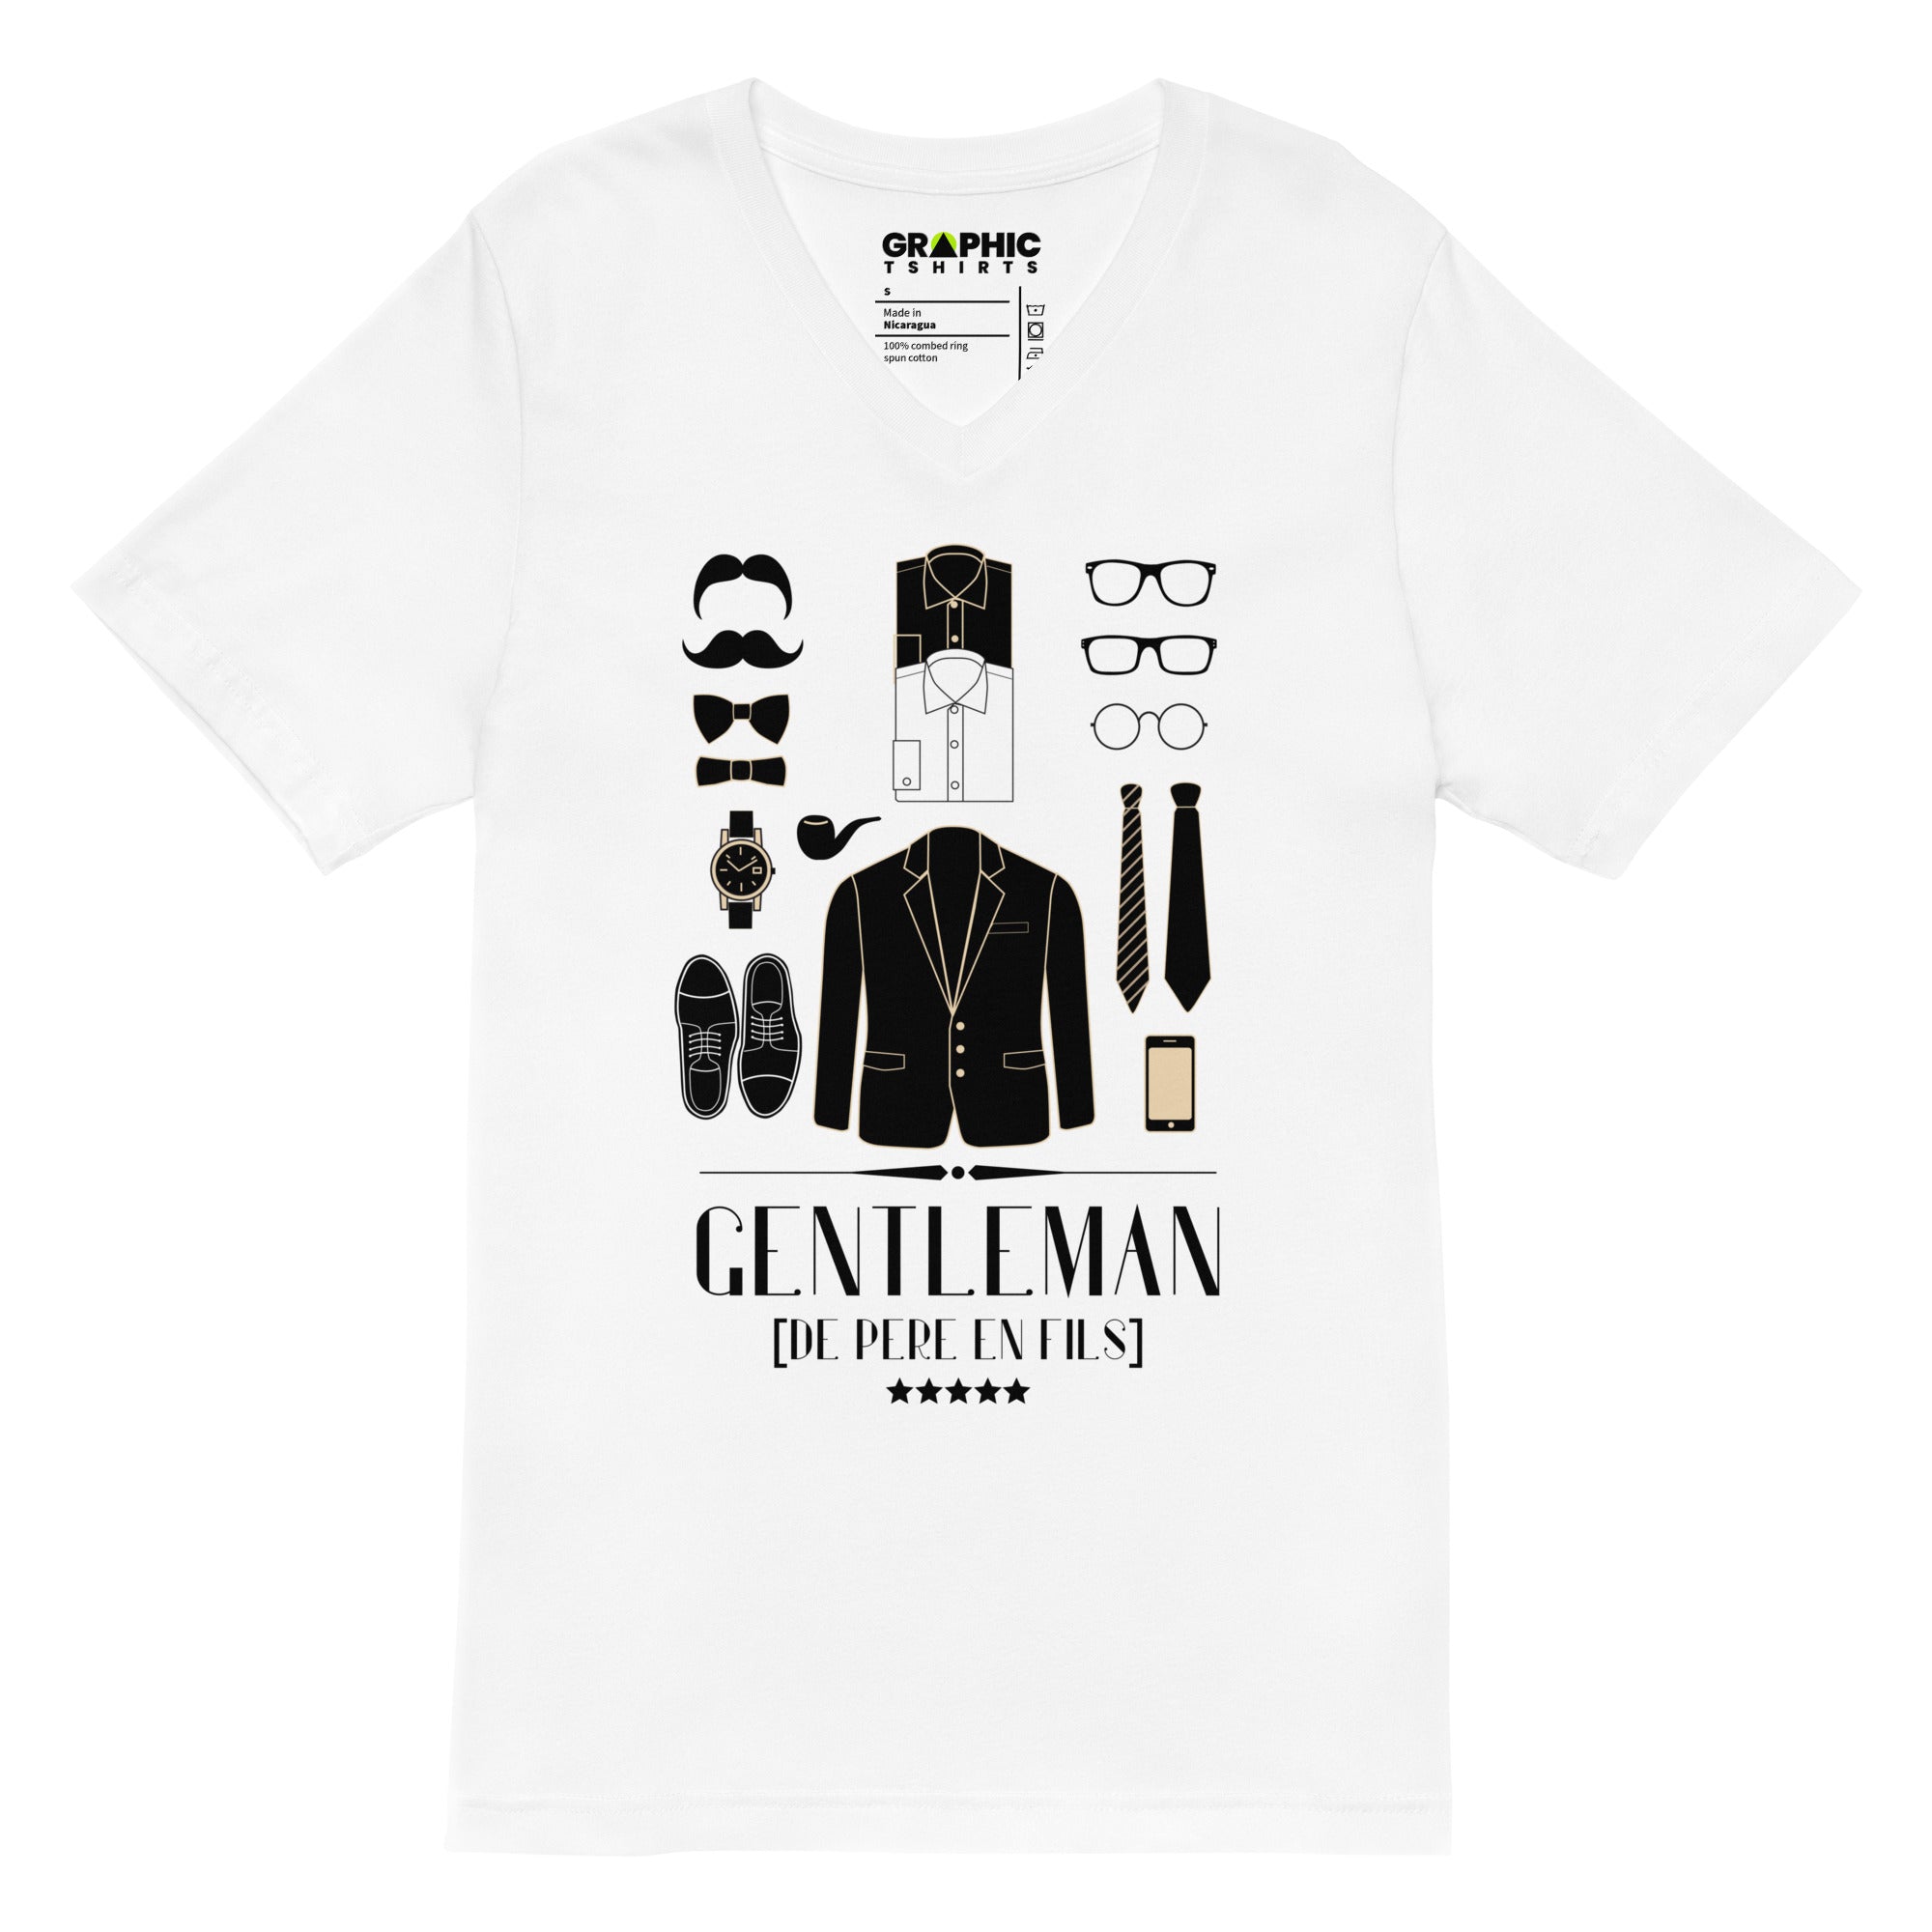 Unisex Short Sleeve V-Neck T-Shirt - Gentleman [De Pere En Fils] Paris Luxury Elegance - GRAPHIC T-SHIRTS